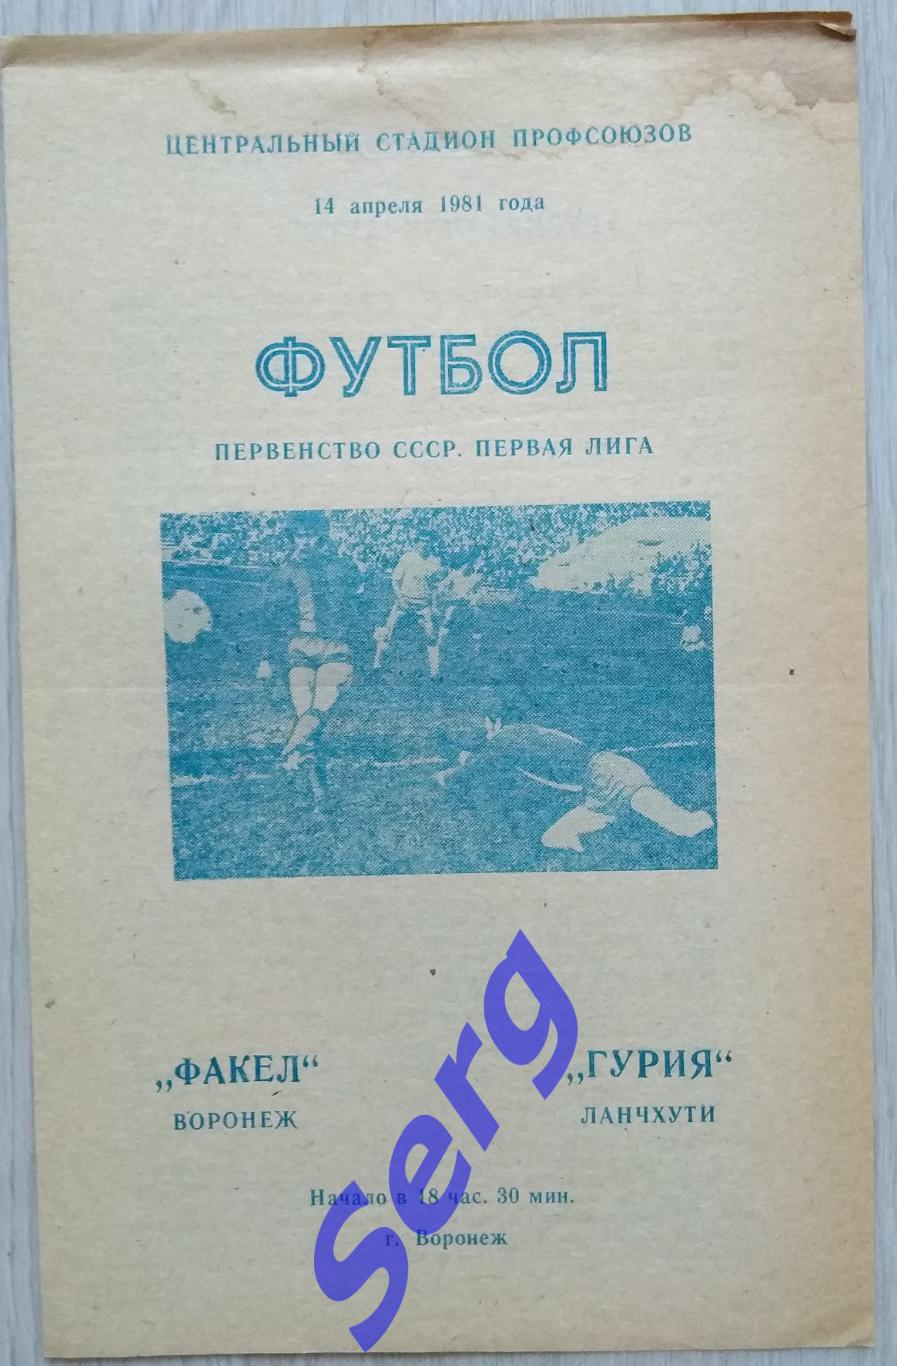 Факел Воронеж - Гурия Ланчхути - 14 апреля 1981 год